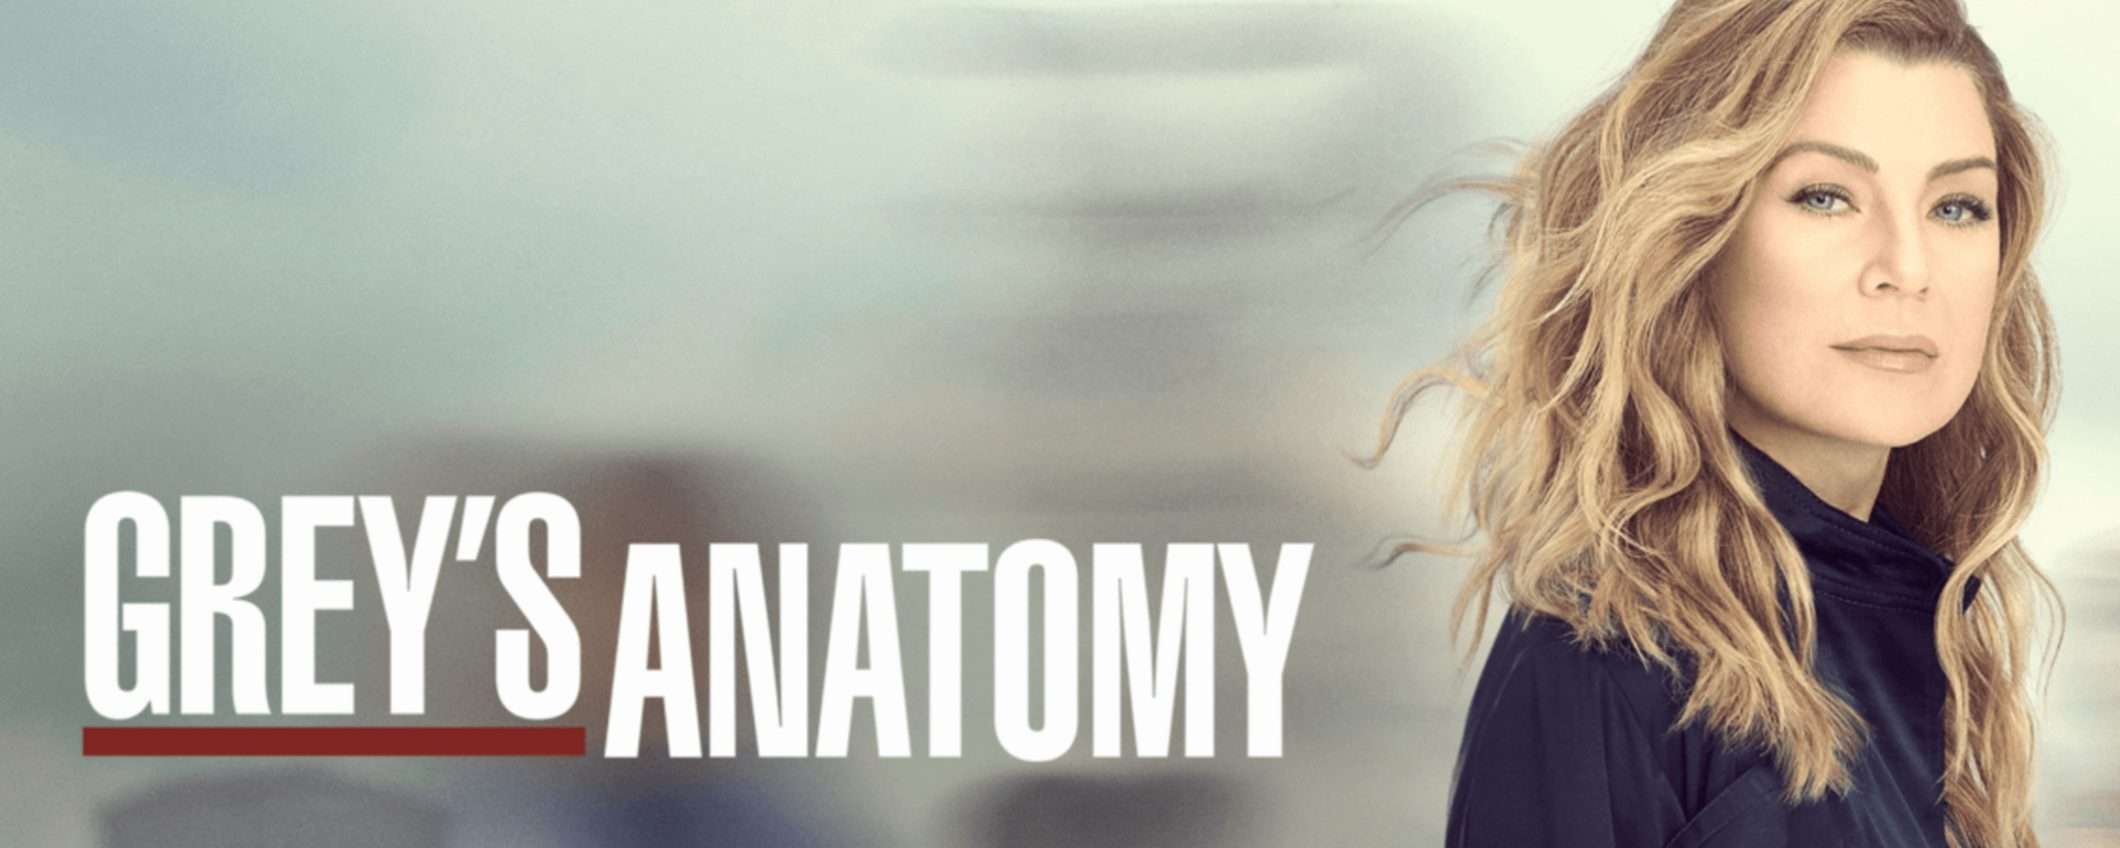 Grey's Anatomy 20: oggi è il grande giorno, su Disney+ arrivano i nuovi episodi